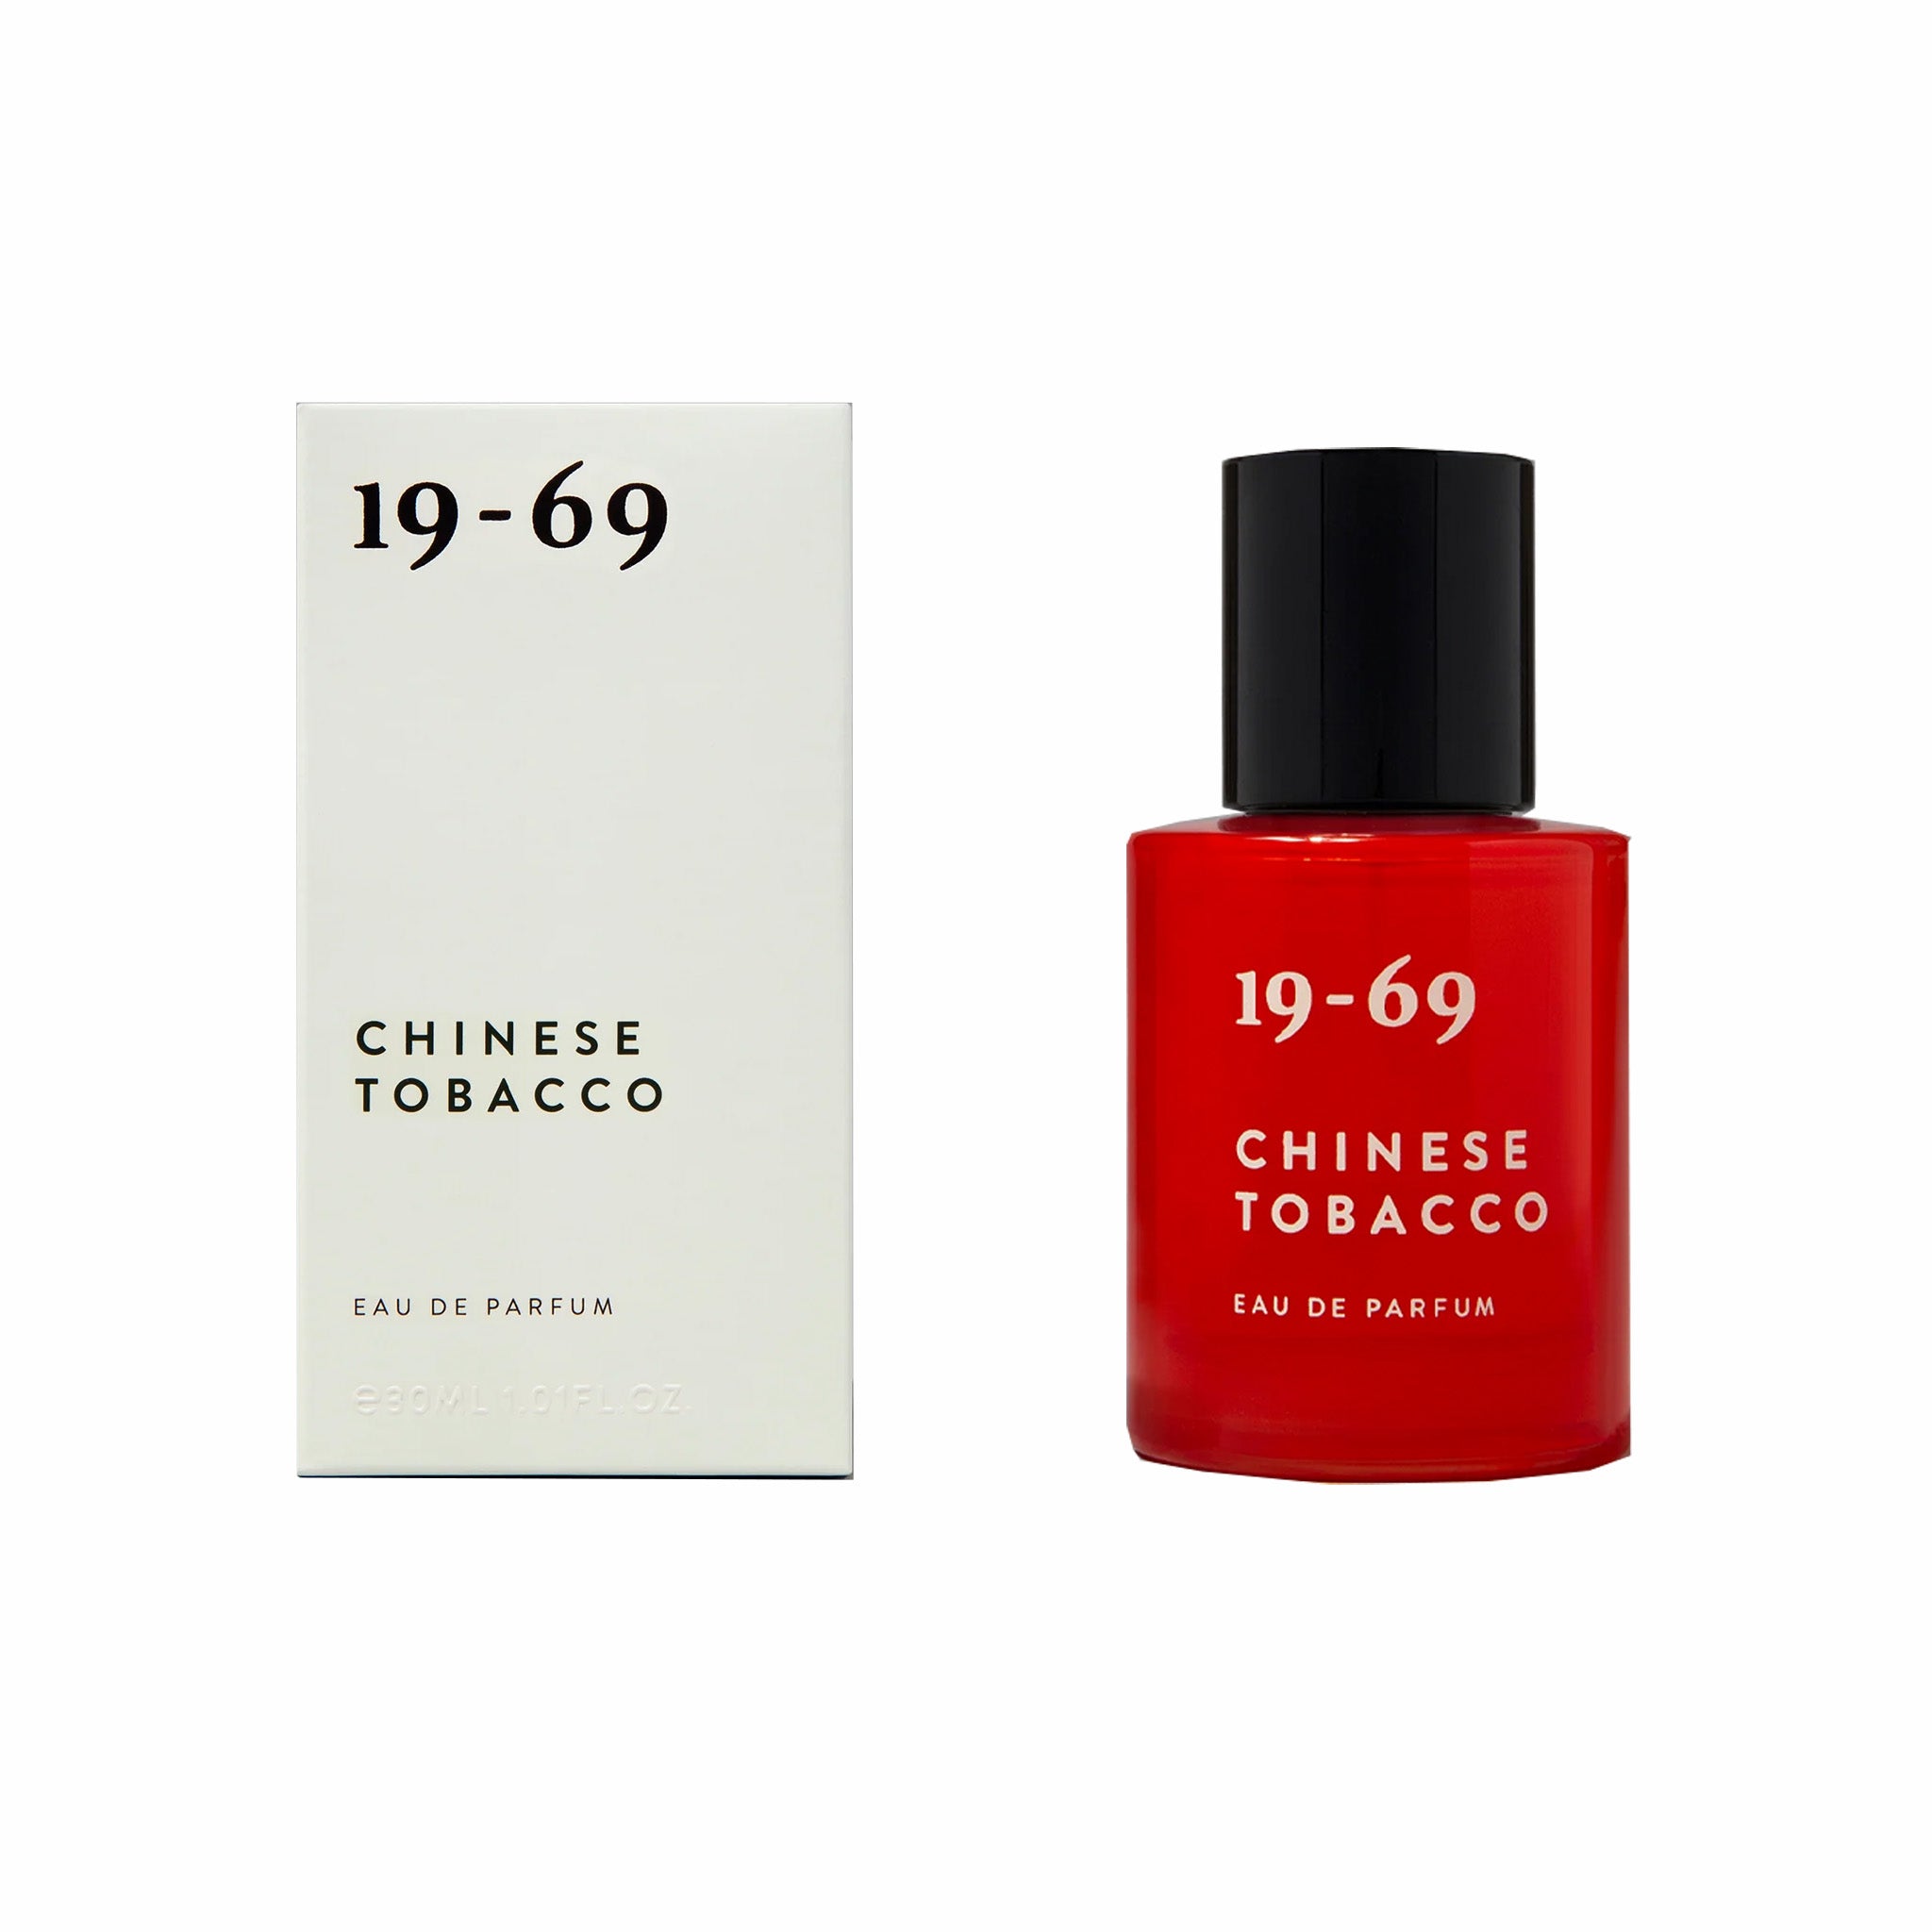 19-69 Chinese Tobacco Eau De Parfum, 30ML - August Shop